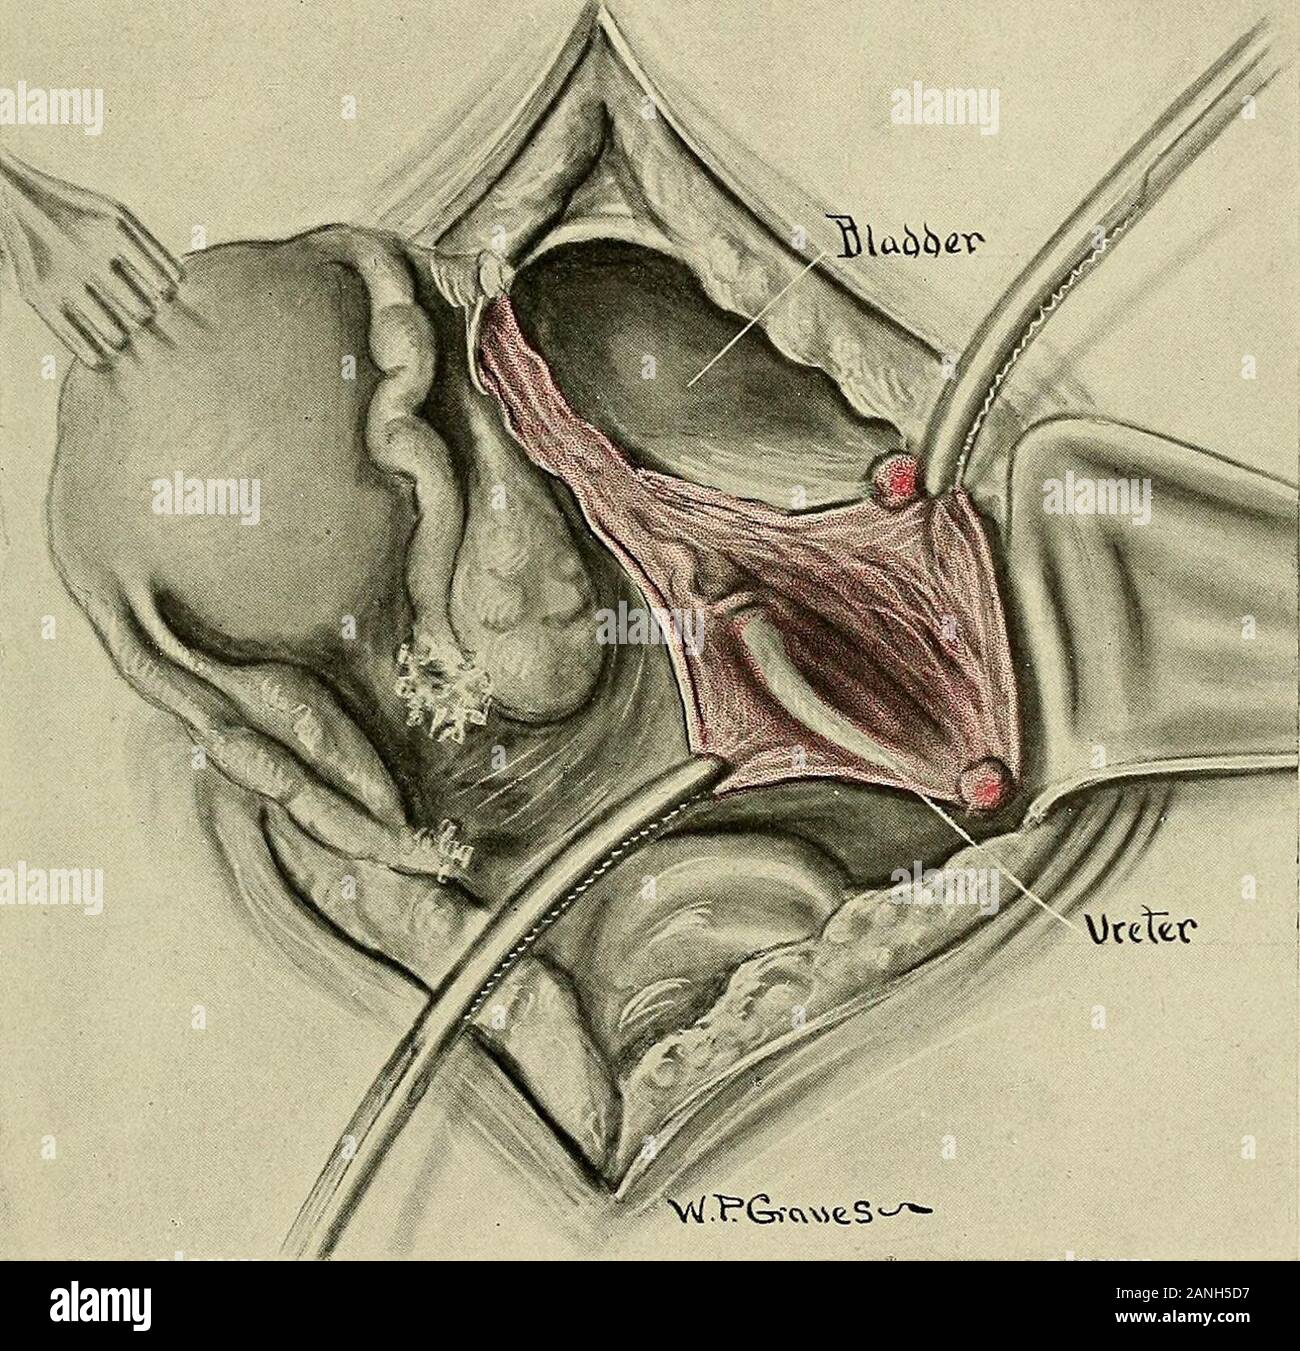 Gynécologie . soft, non-cordon pulsatile. Certains opérateurs, après l'identification de l'uretère, il et liftit de son lit en passant en dessous d'une bande de gaze ou d'une ligature ou quelques curvedinstrument. Nous avons l'habitude de priver l'uretère aussi peu que possible, en tant que maître de conférence avec son sang-alimentation prédispose à une nécrose et une fistule urétérale. Lorsque l'urètre a été isolé, l'étape suivante consiste à lier les vaisseaux utérins. Avec l'uretère comme guide, l'index est passé sous les vaisseaux utérins dans les opérations 639 hystérectomie direction de la vessie, puis poussé vers l'avant jusqu'à ce qu'il émerge Banque D'Images